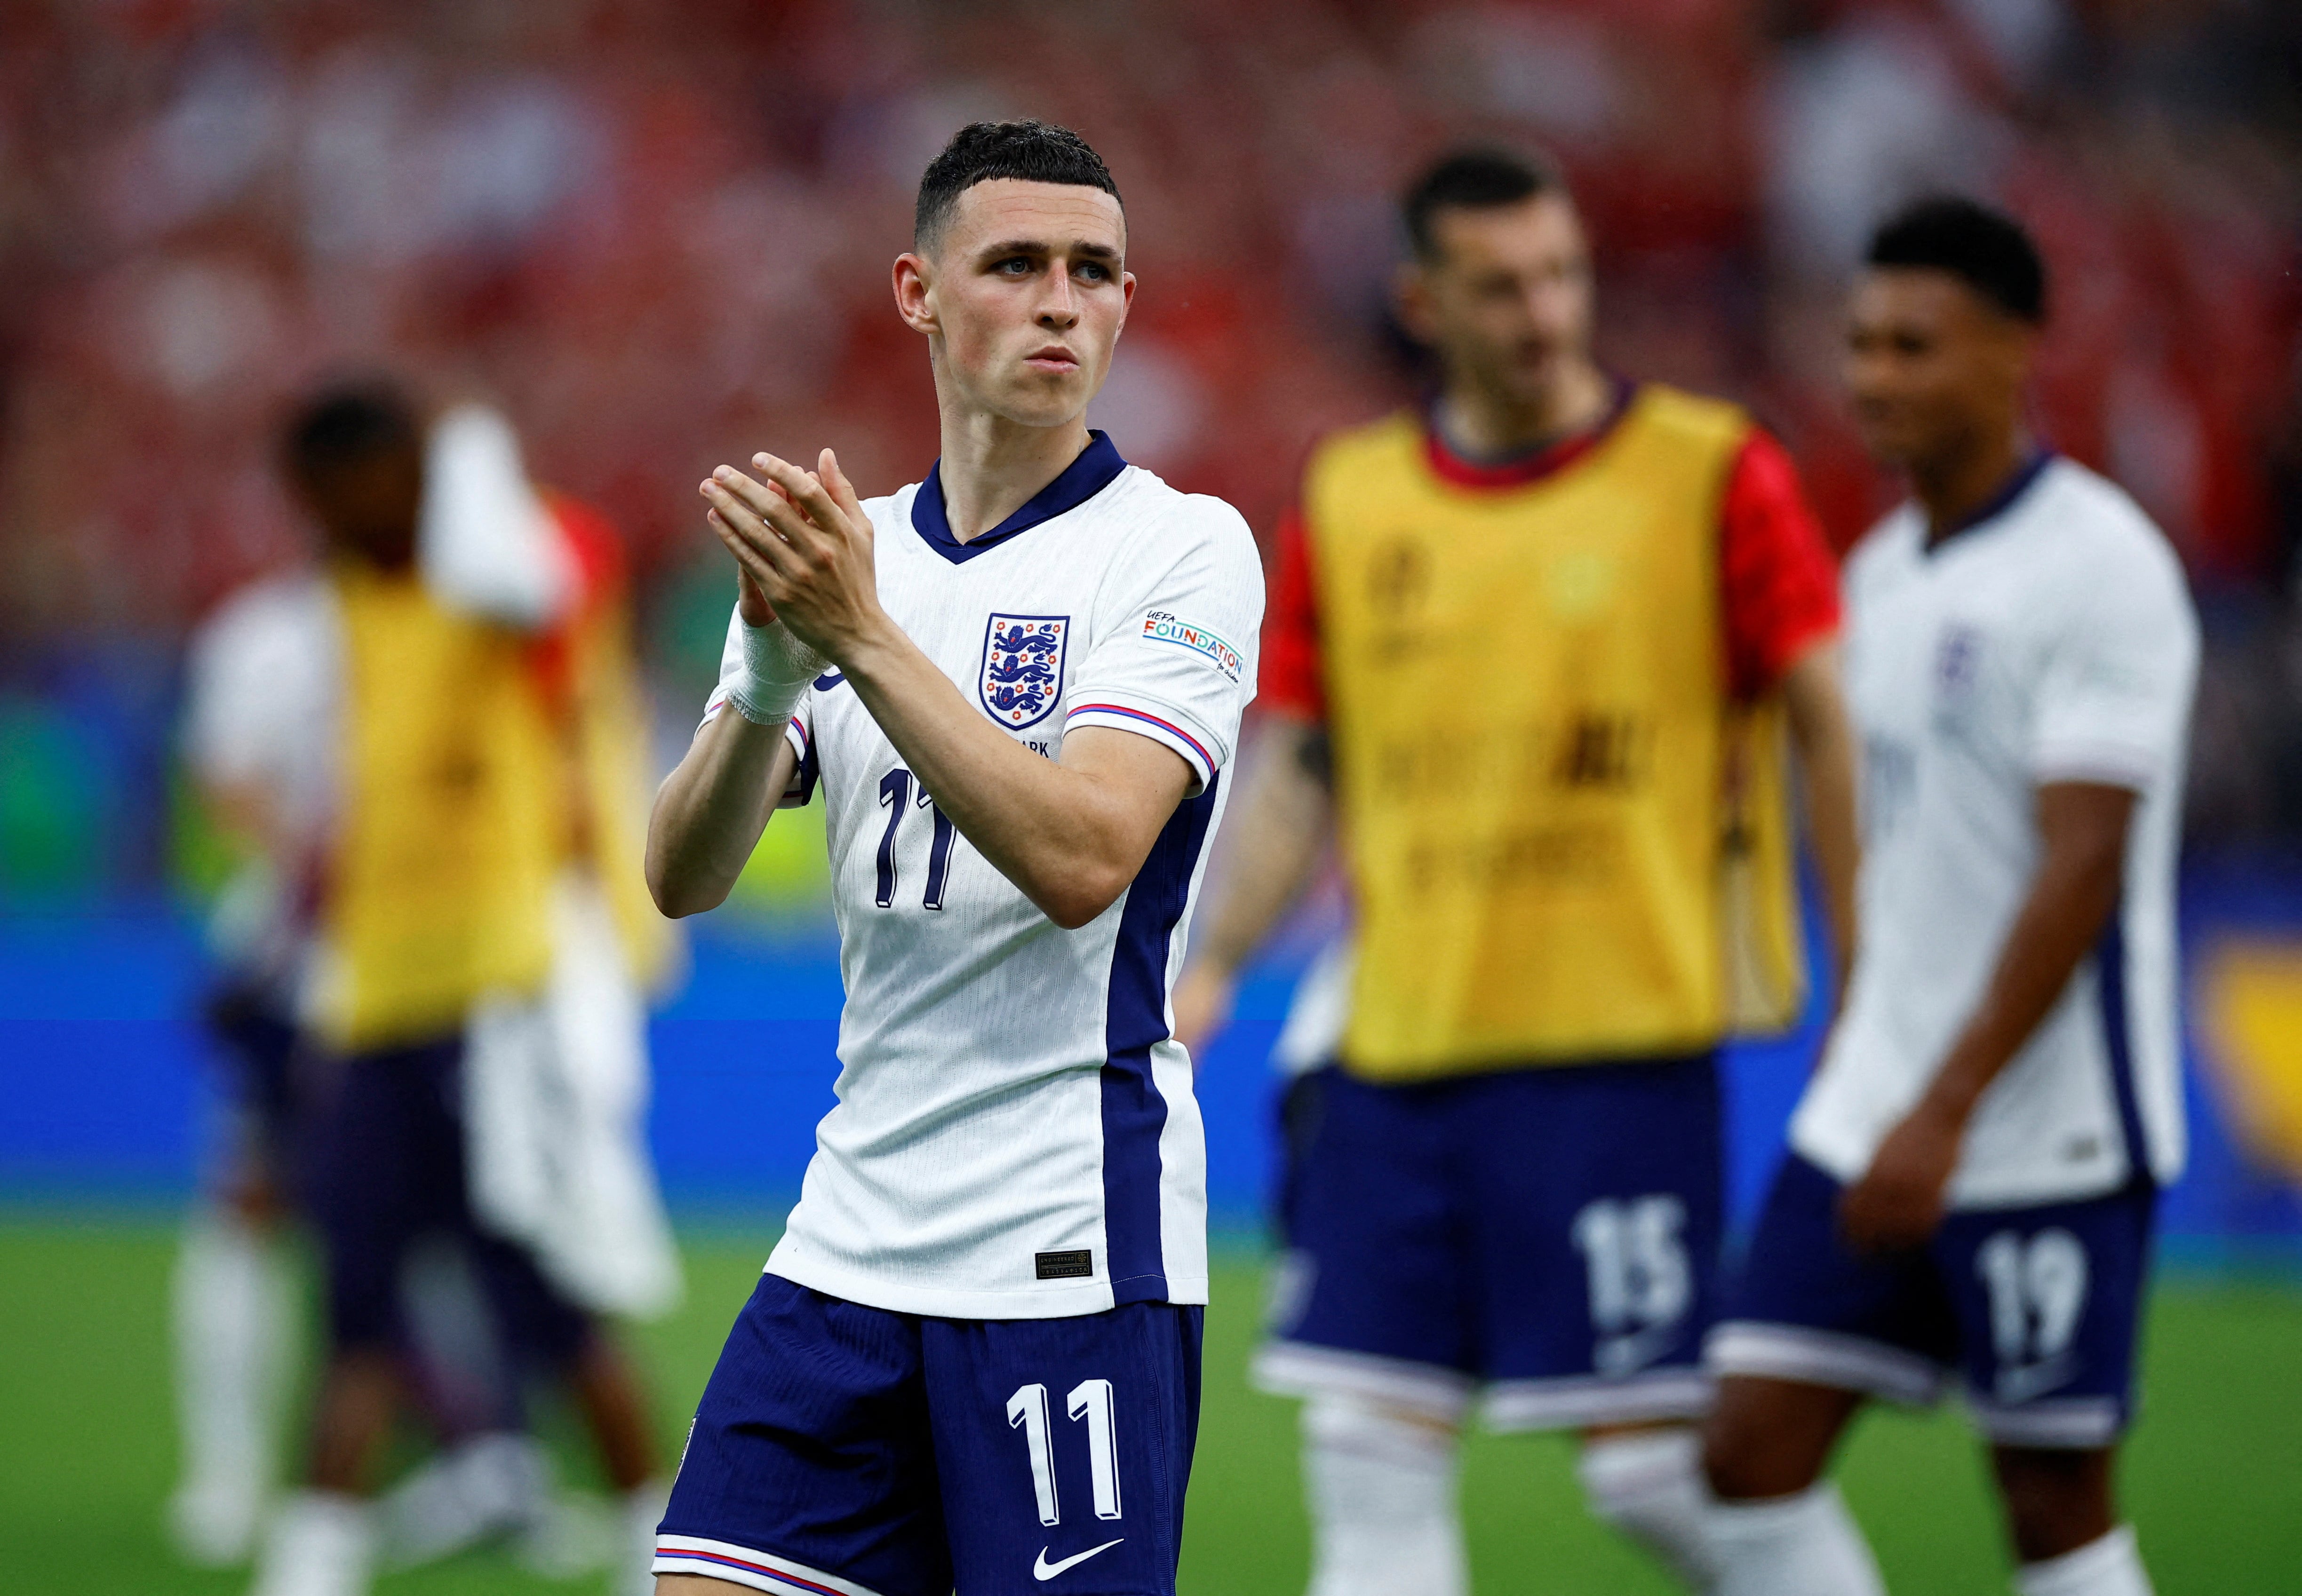 El futbolista de 24 años disputó los tres partidos de Inglaterra en la Eurocopa desde el arranque y en los últimos dos se fue reemplazado en el complemento (REUTERS/John Sibley/File Photo)